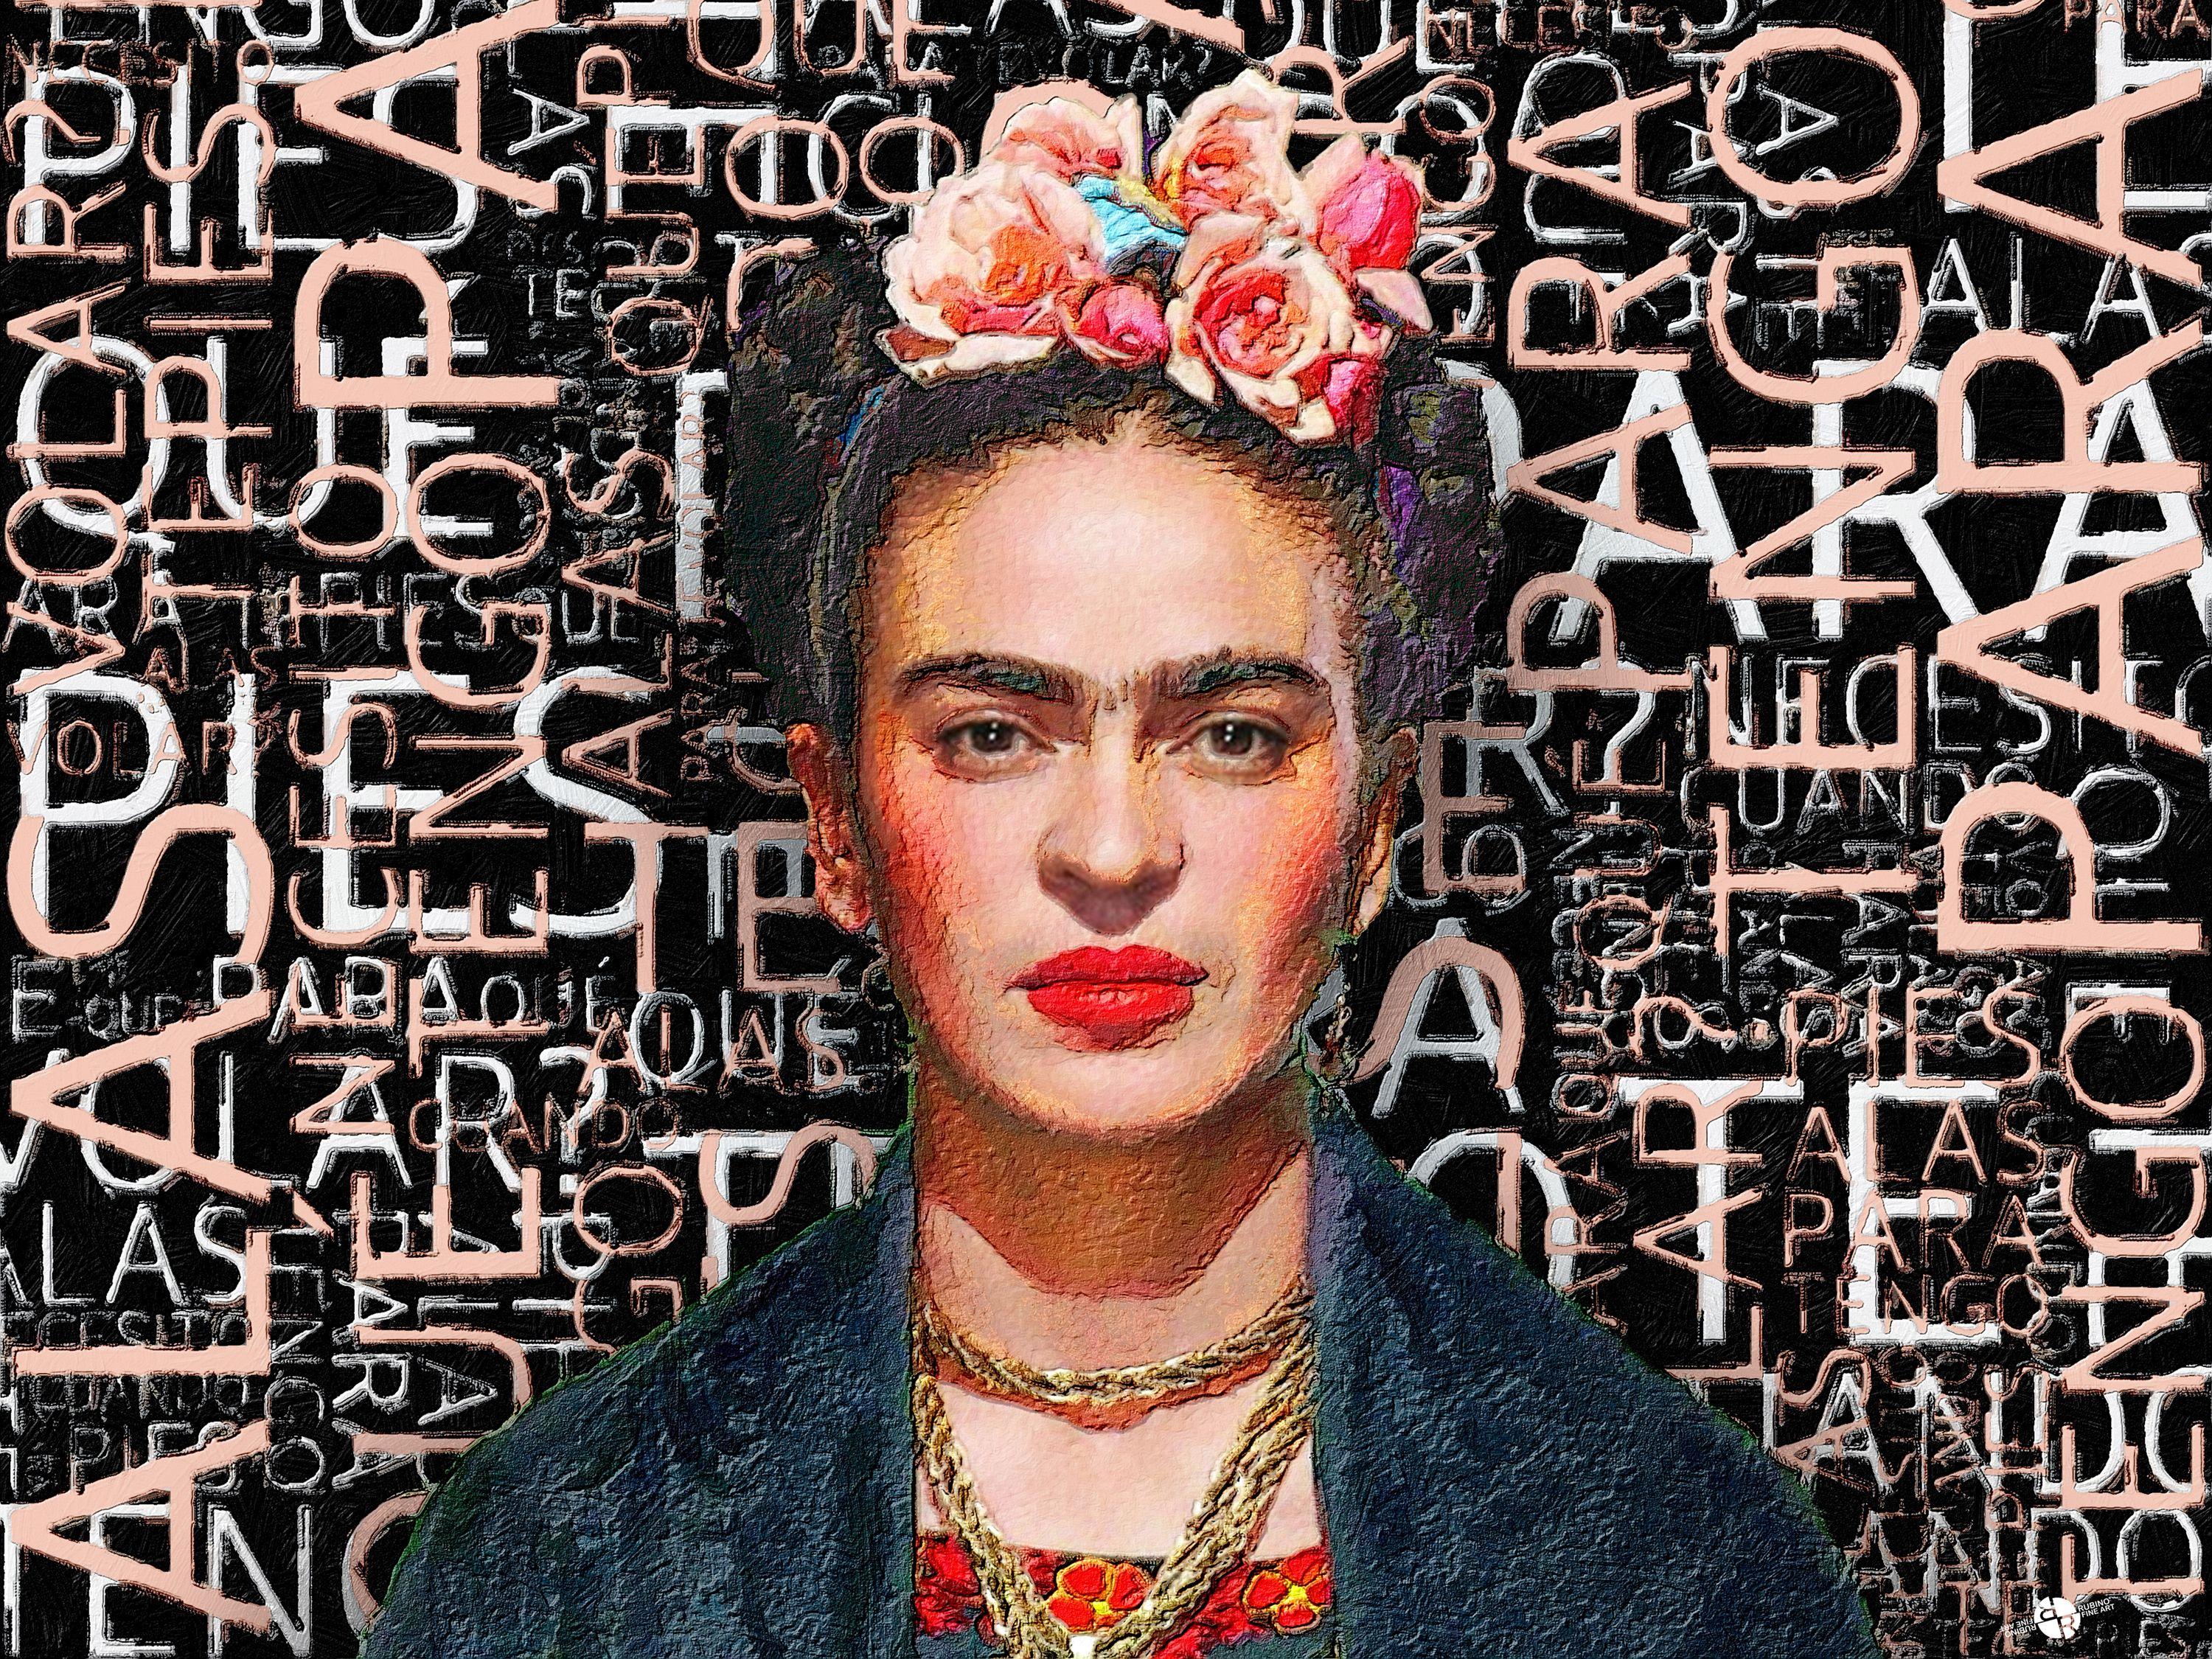 Frida Kahlo, Mixed Media on Canvas - Mixed Media Art by Tony Rubino